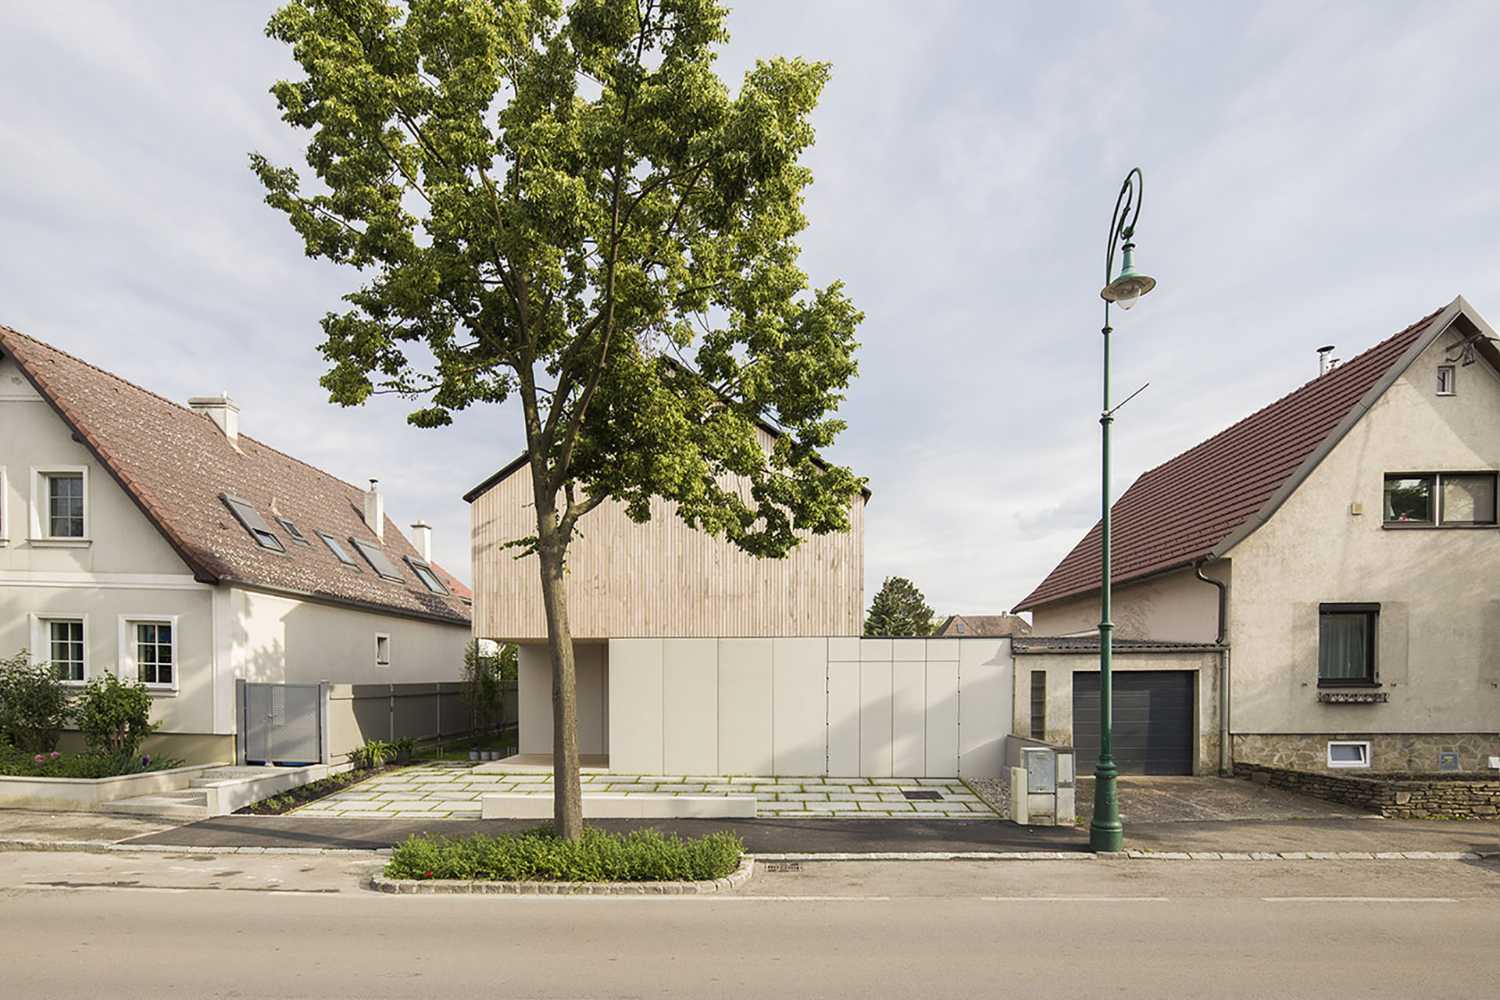 House W1T in legno e cemento per un abitare sostenibile e un’architettura dai volumi dinamici